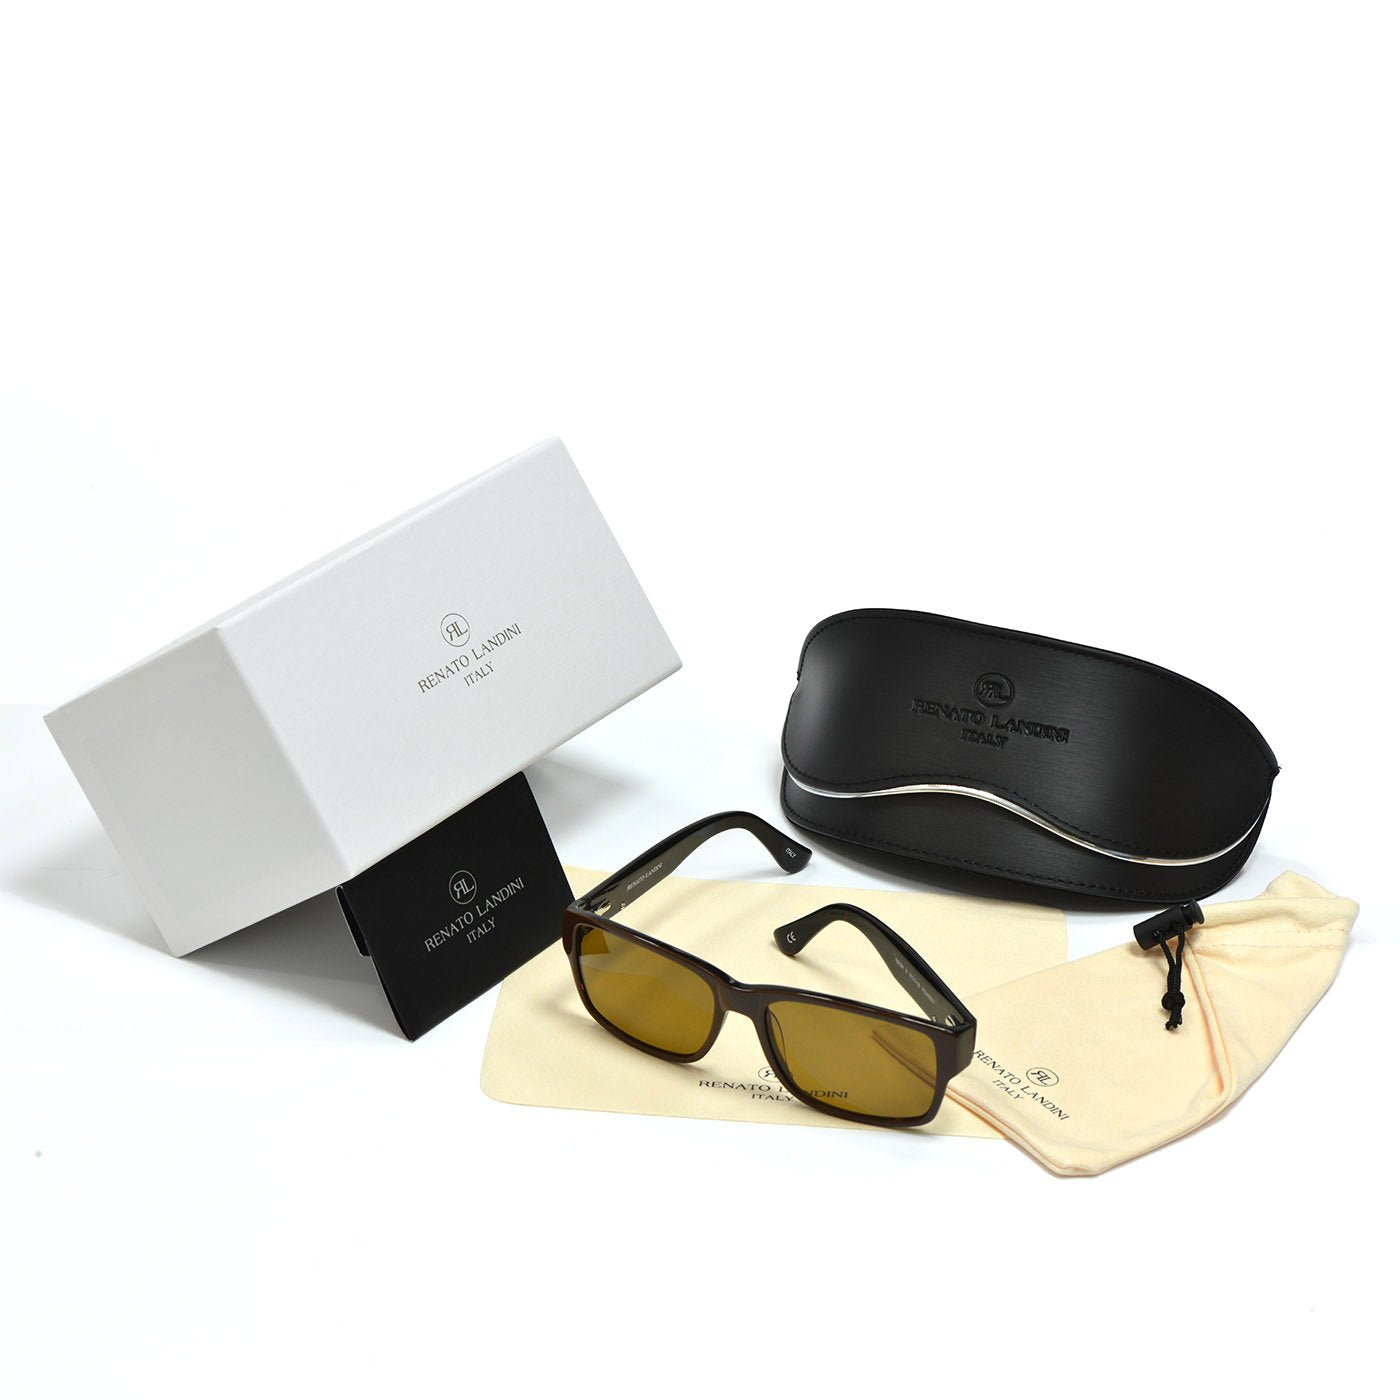 RENATO LANDINI Men's Sunglasses Brown/ Ultra Vision